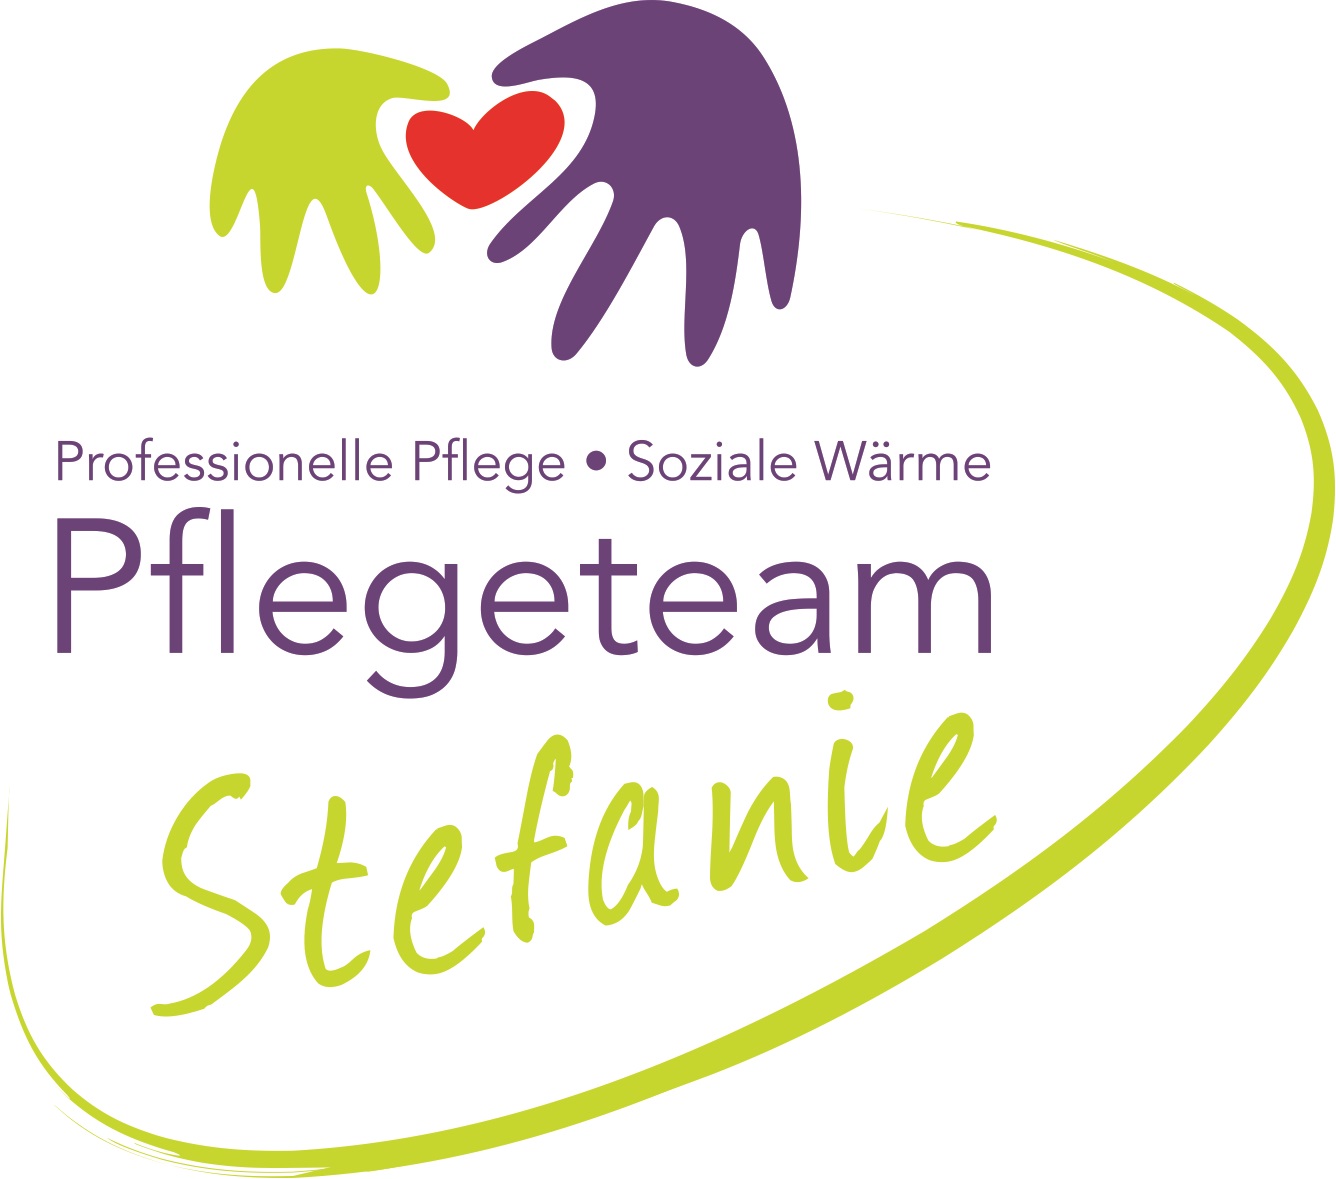 Pflegeteam Stefanie logo